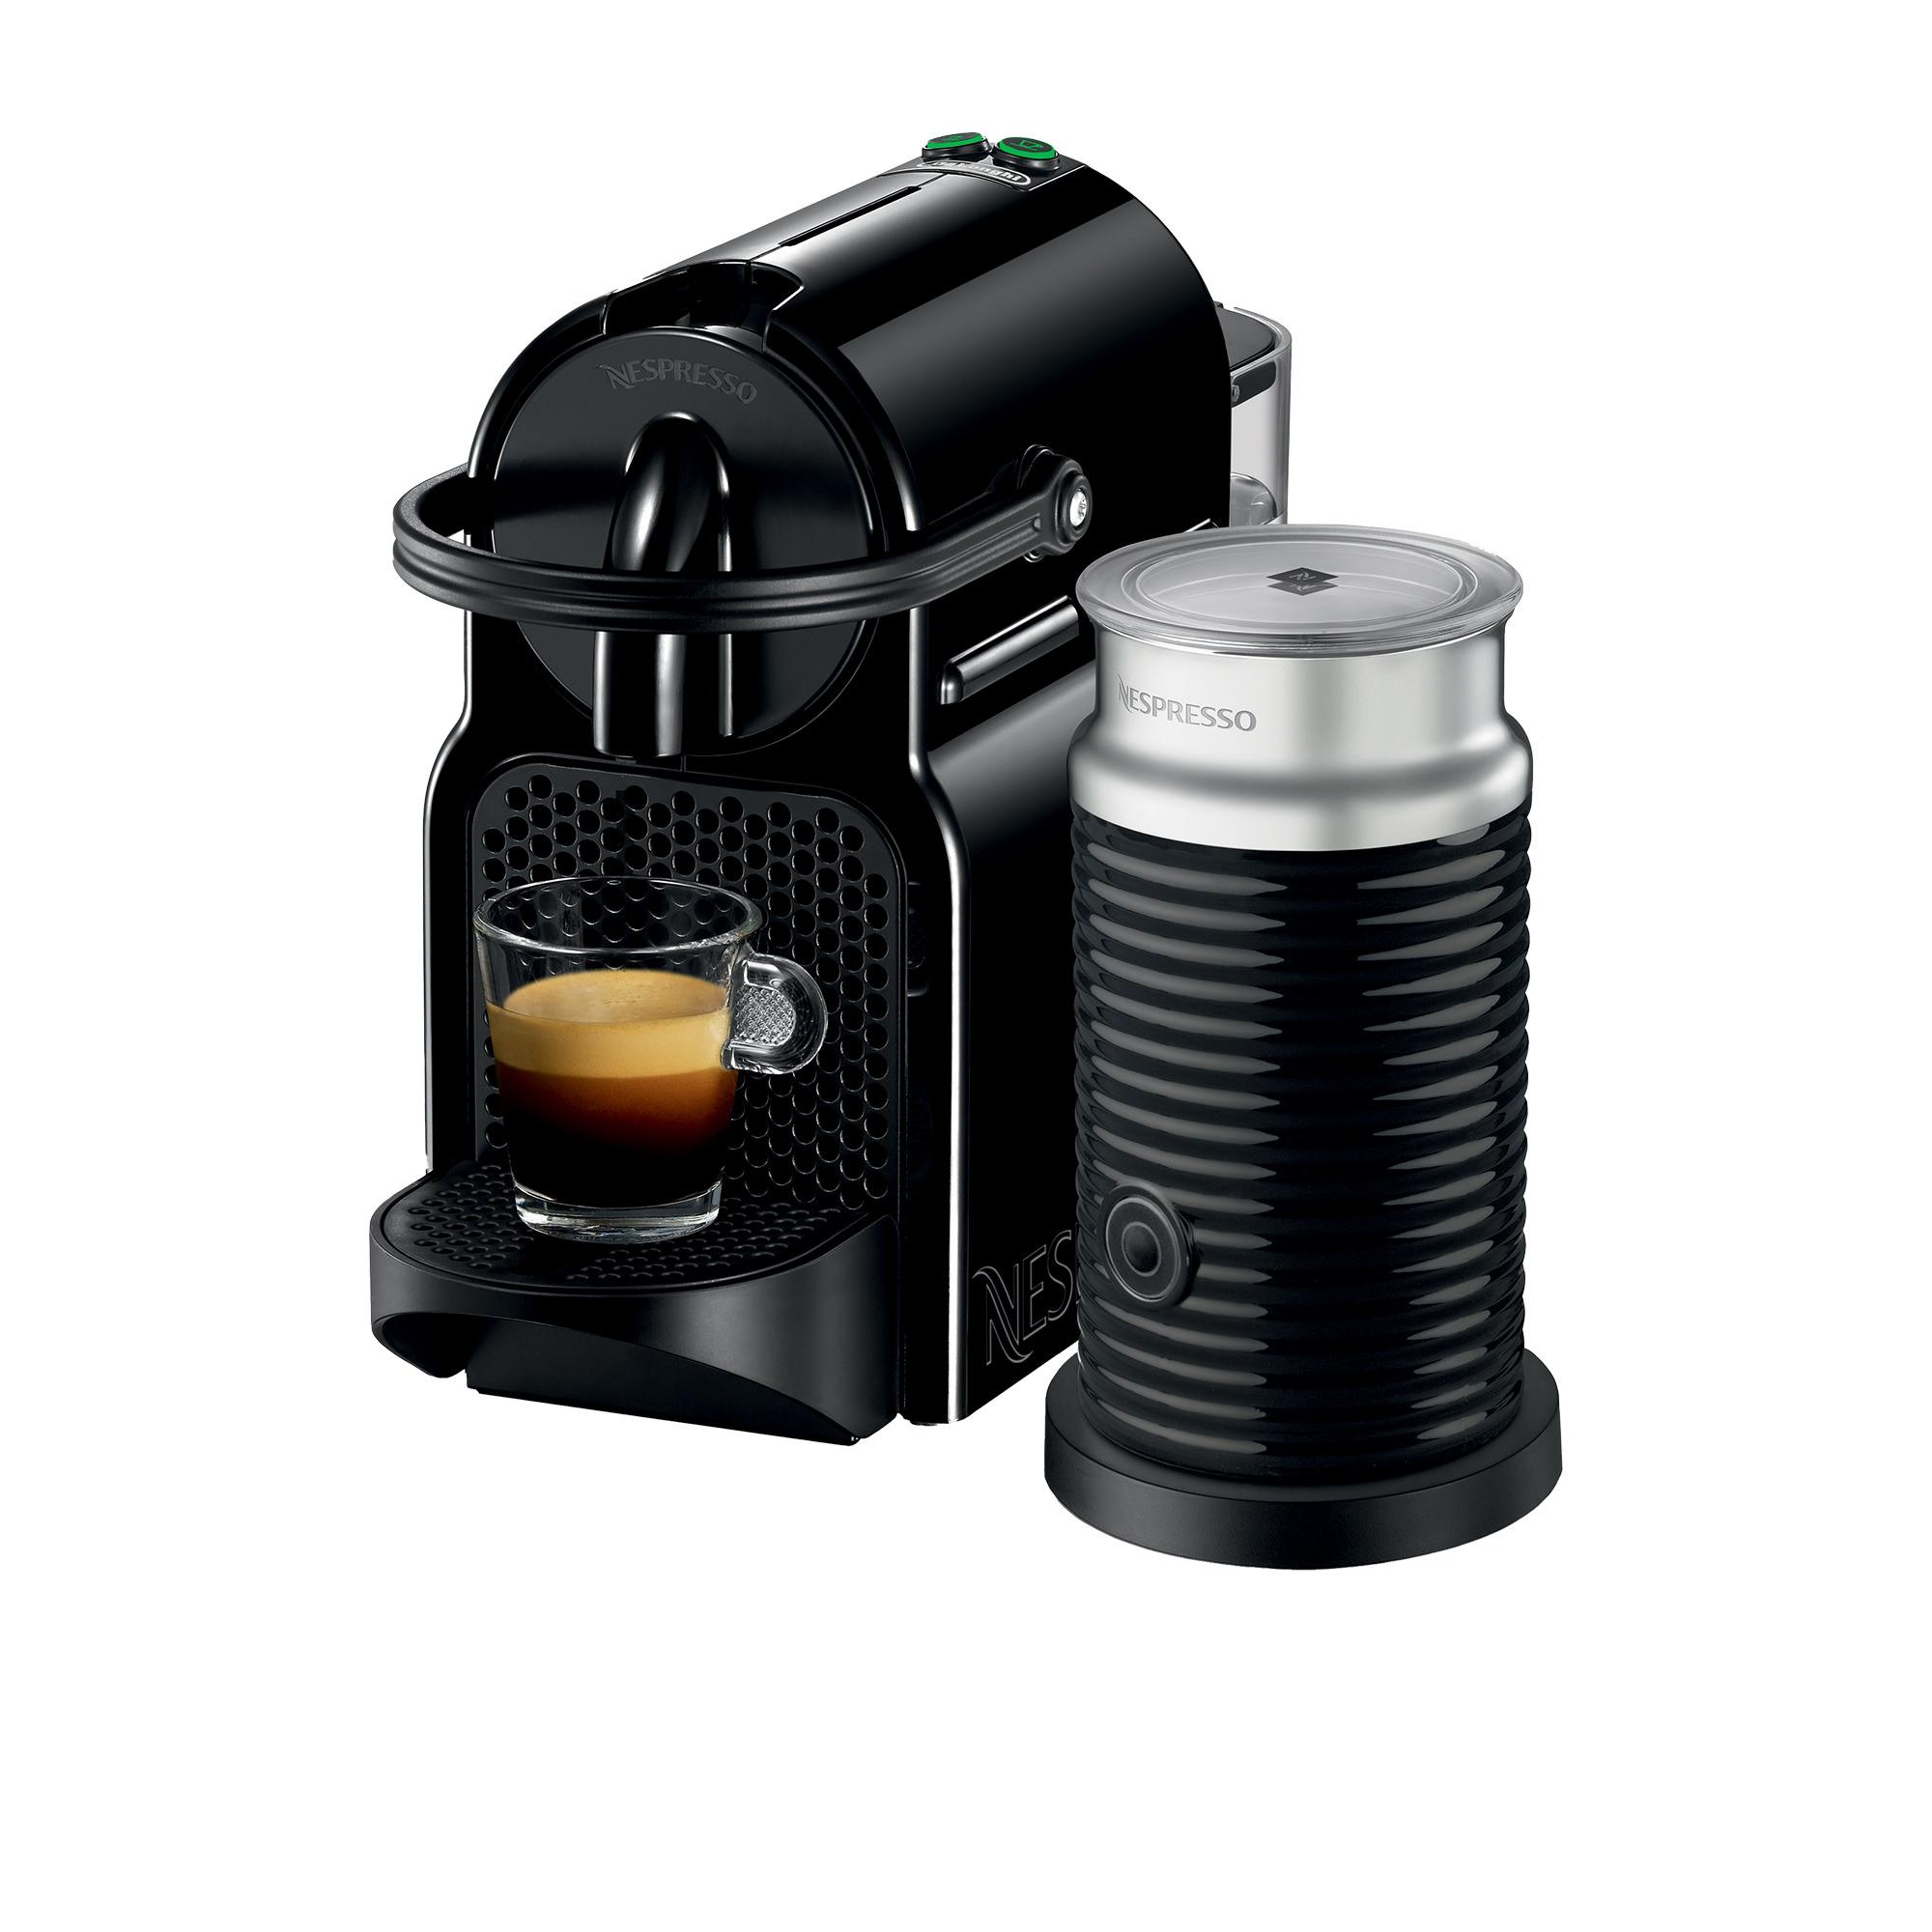 DeLonghi Nespresso Inissia EN80BAE Coffee Machine Black Image 1